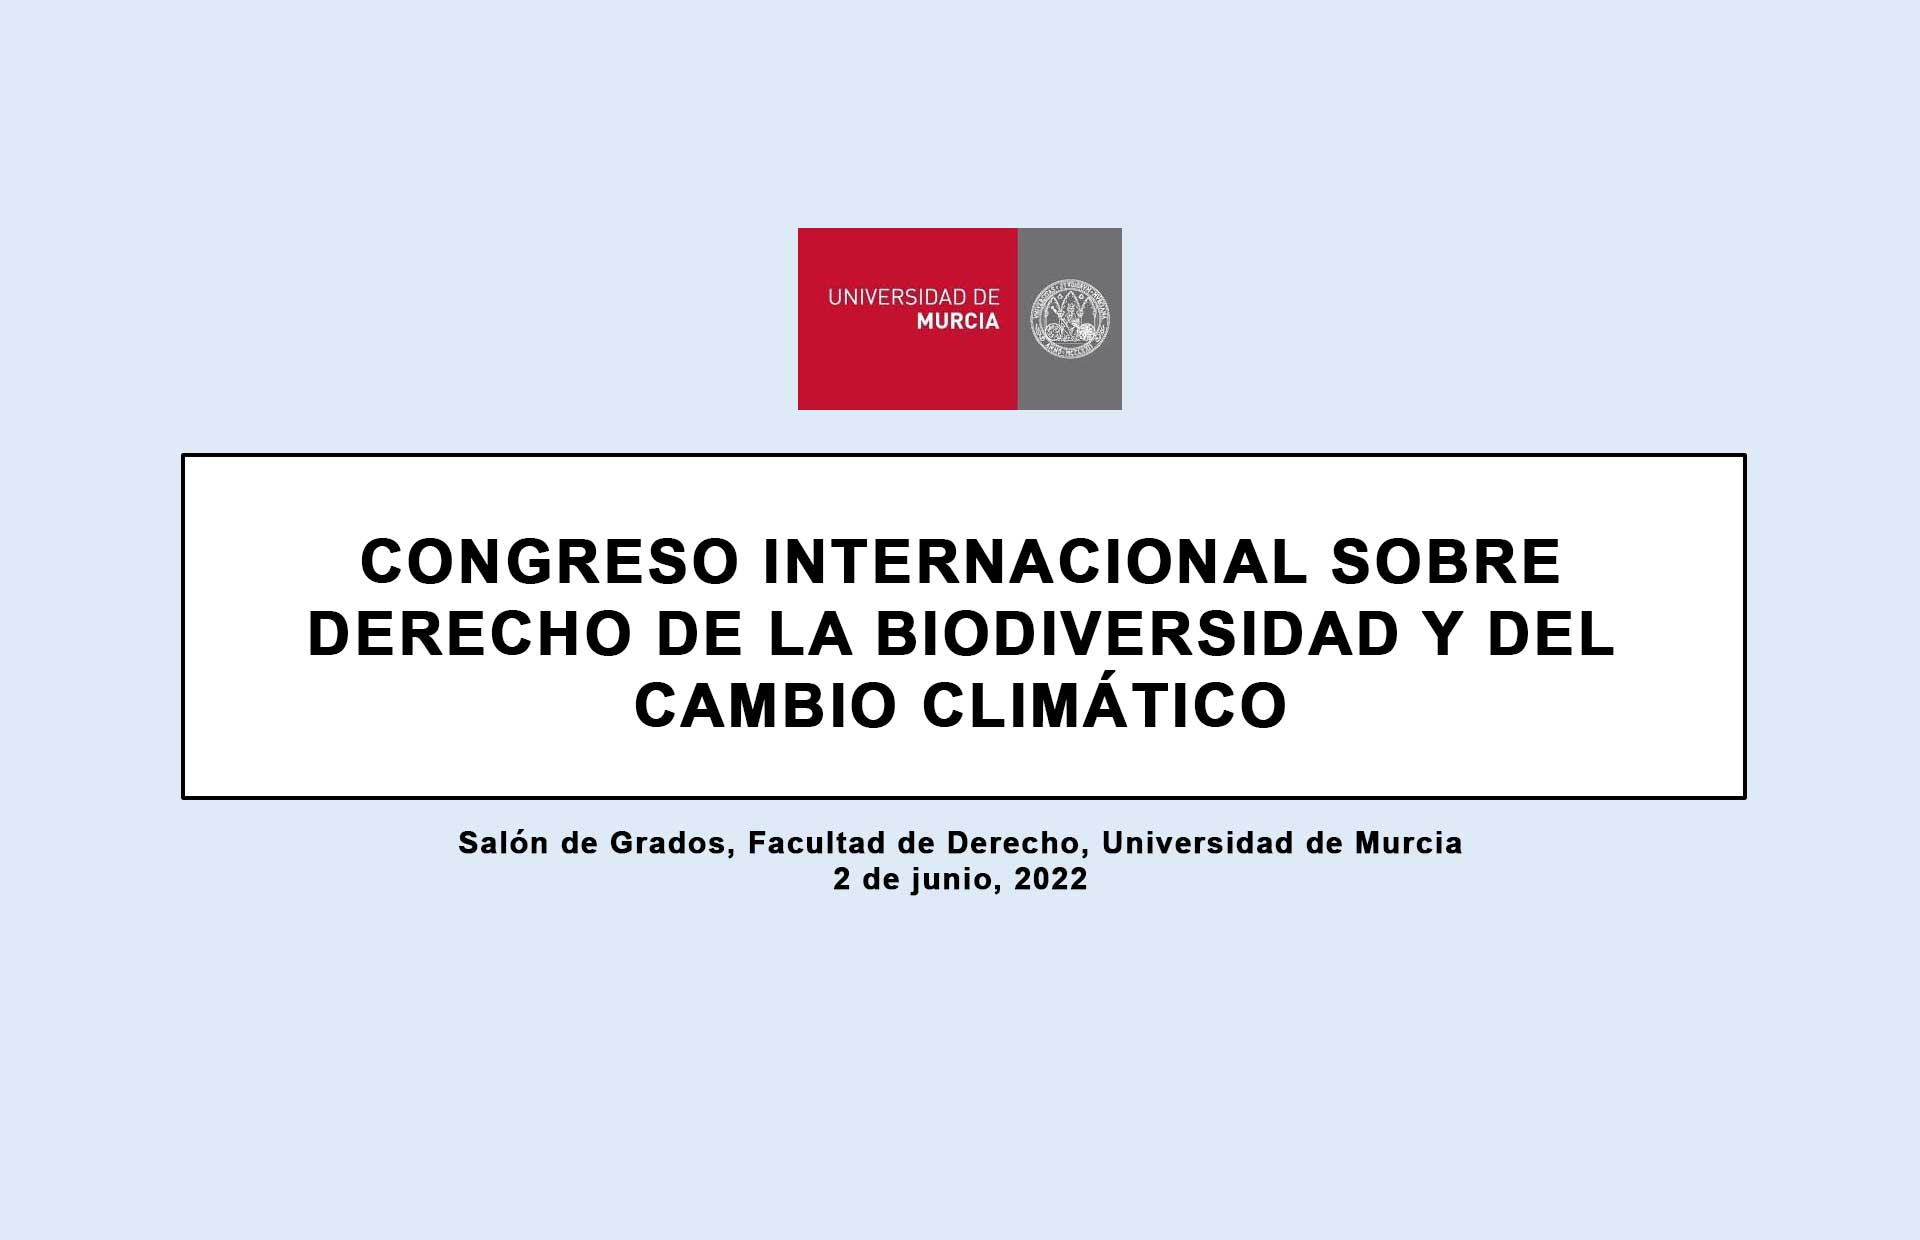 Congreso Internacional sobre Derecho de la Biodiversidad y del Cambio Climático